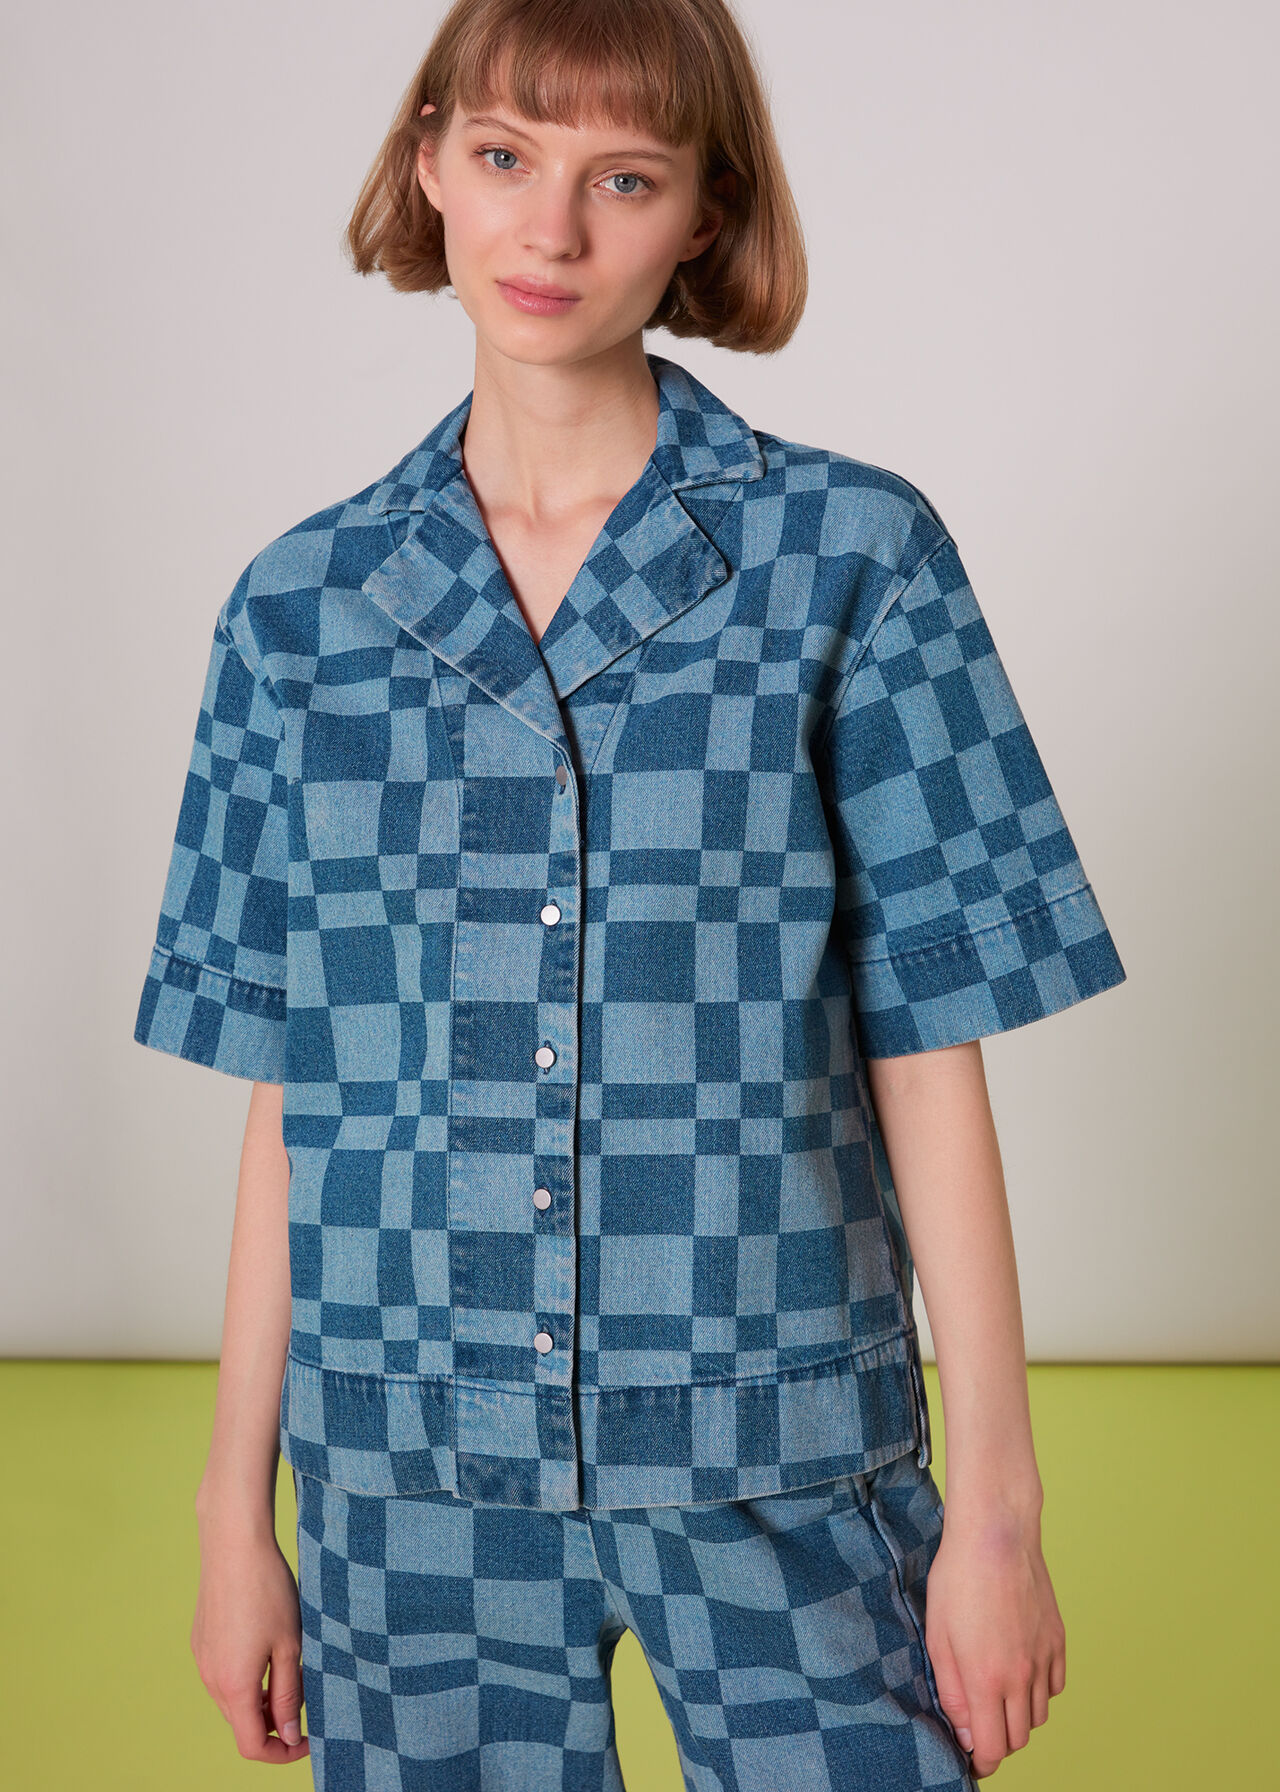 Billie Checkerboard Shirt